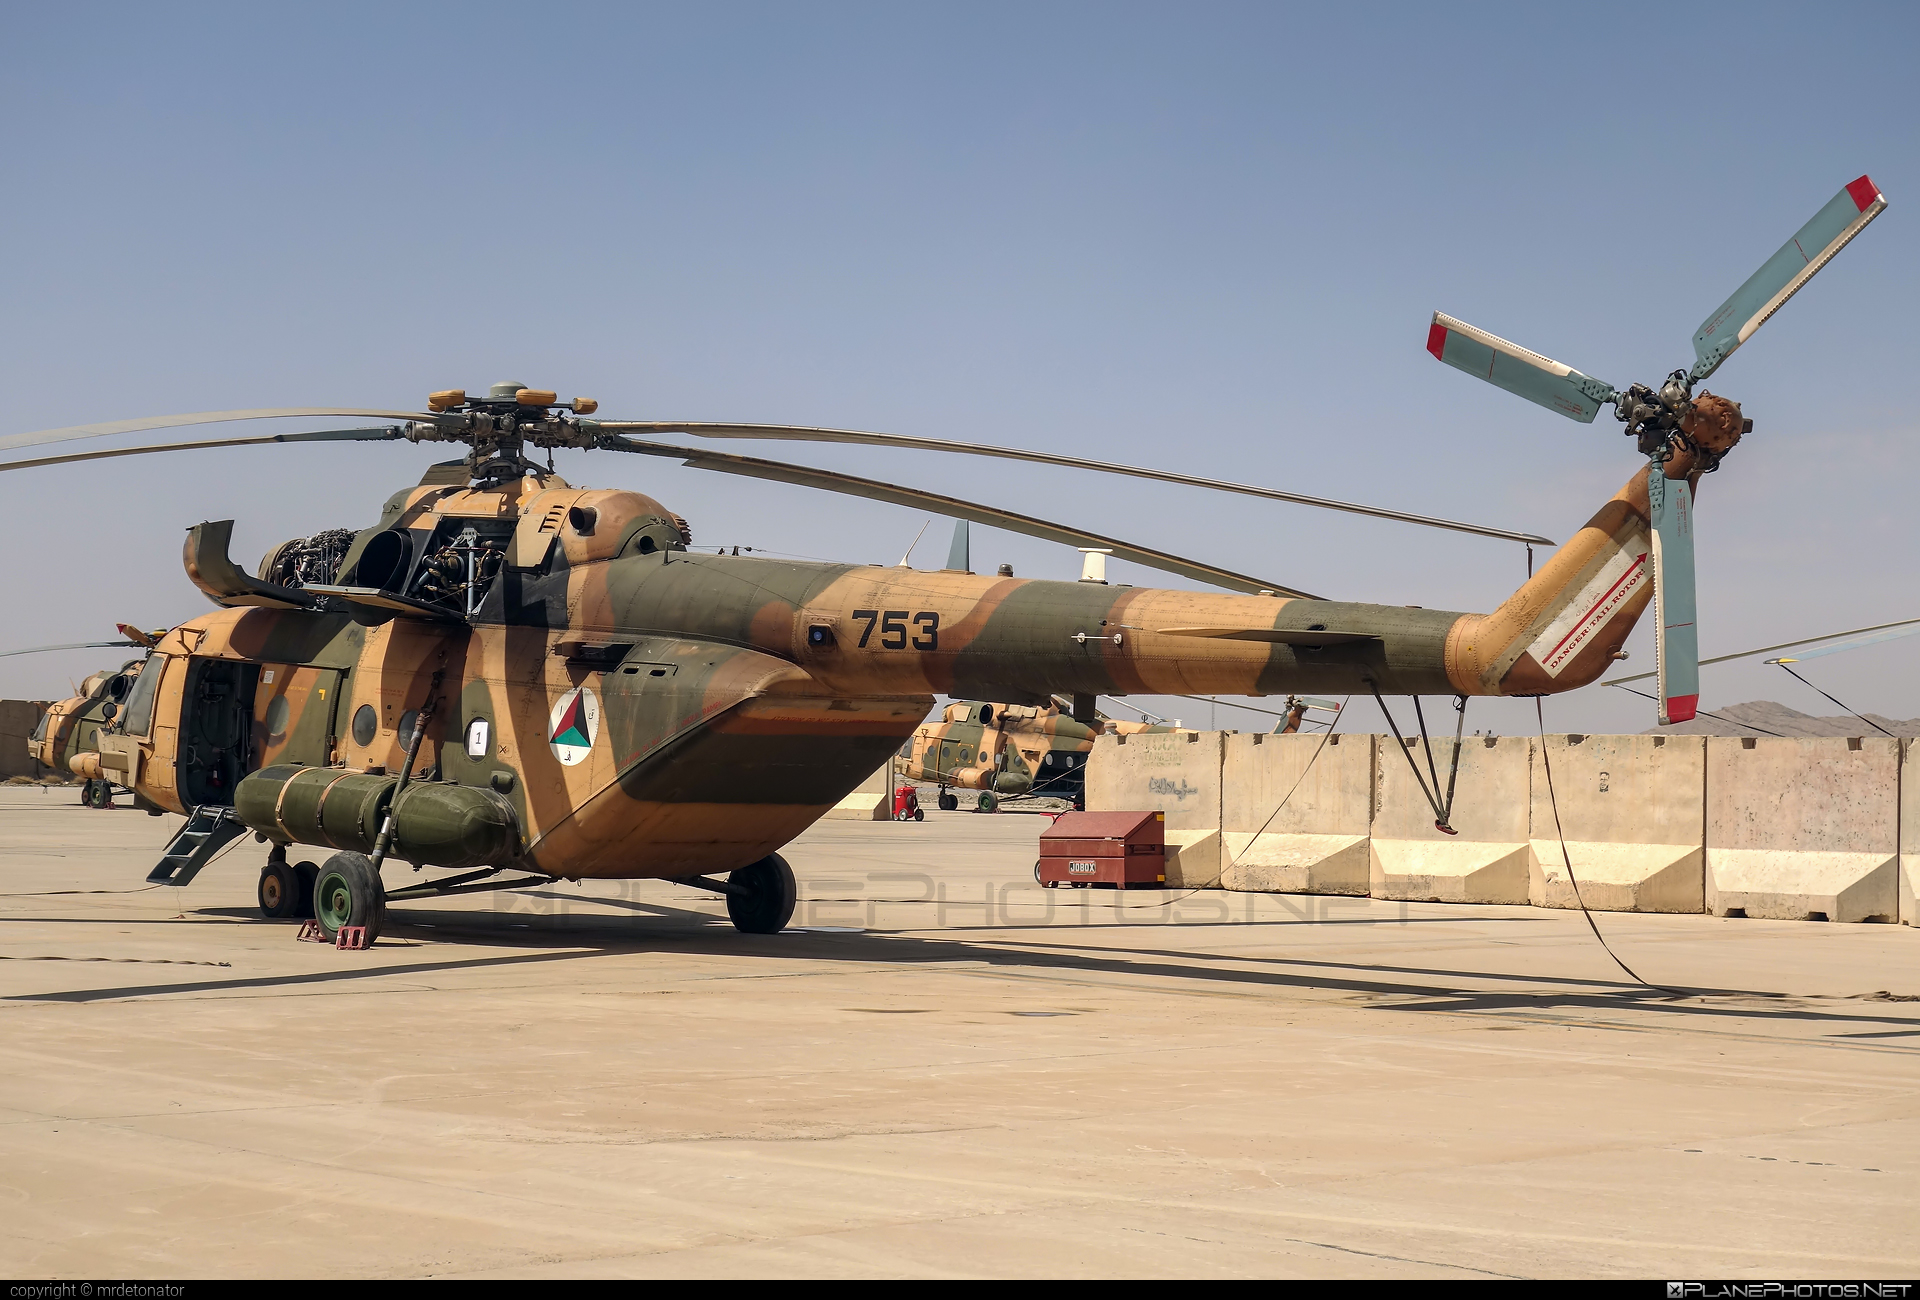 Mil Mi-17V-5 - 753 operated by Afghan Air Force #afghanairforce #mi17 #mi17v5 #mil #mil17 #milhelicopters